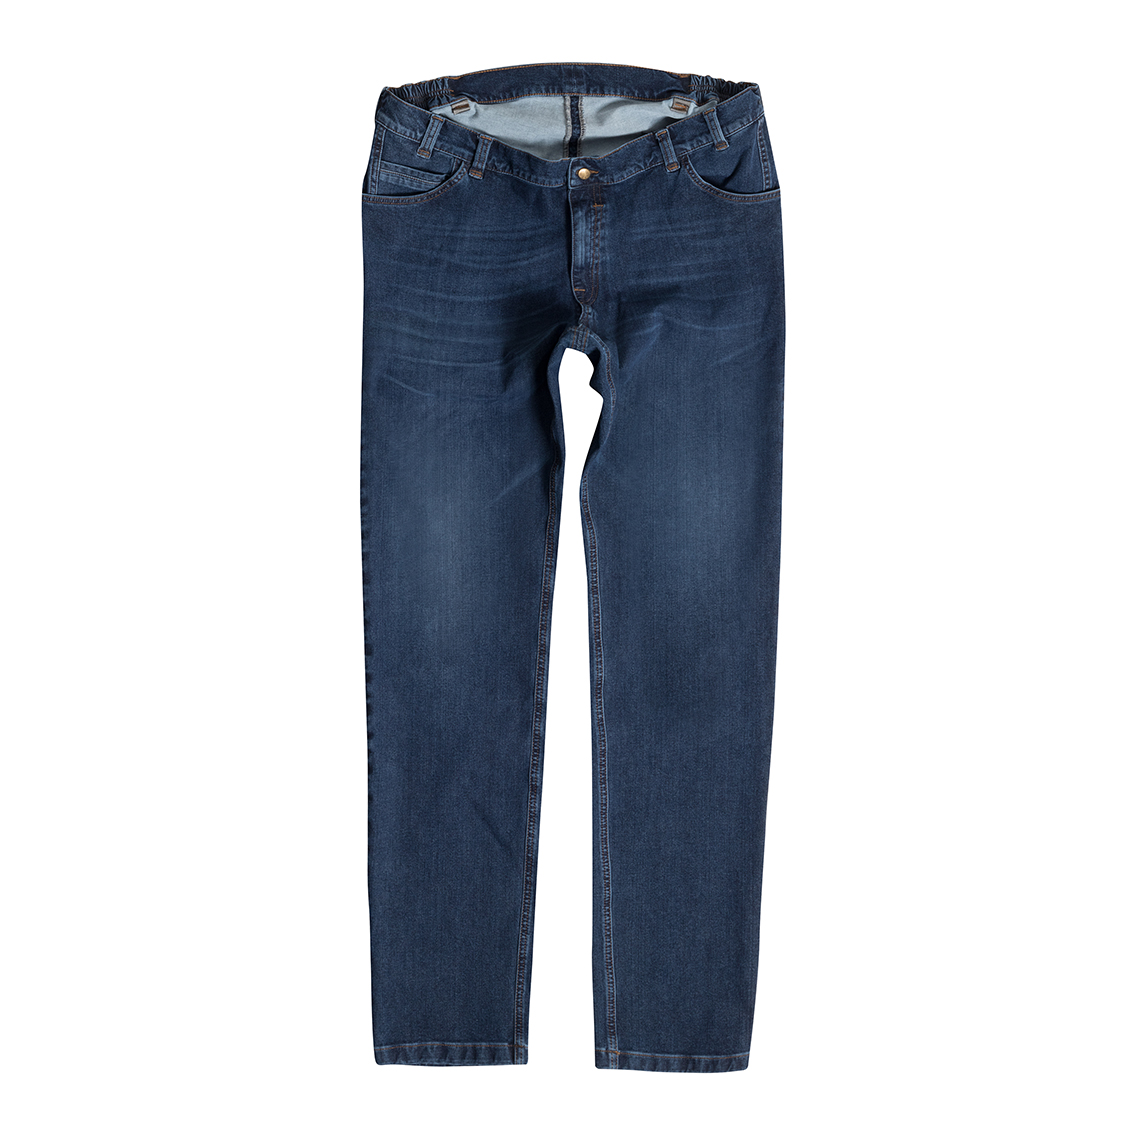 Men's Jeans Bi-Stretch, blue MIKE 10390 58